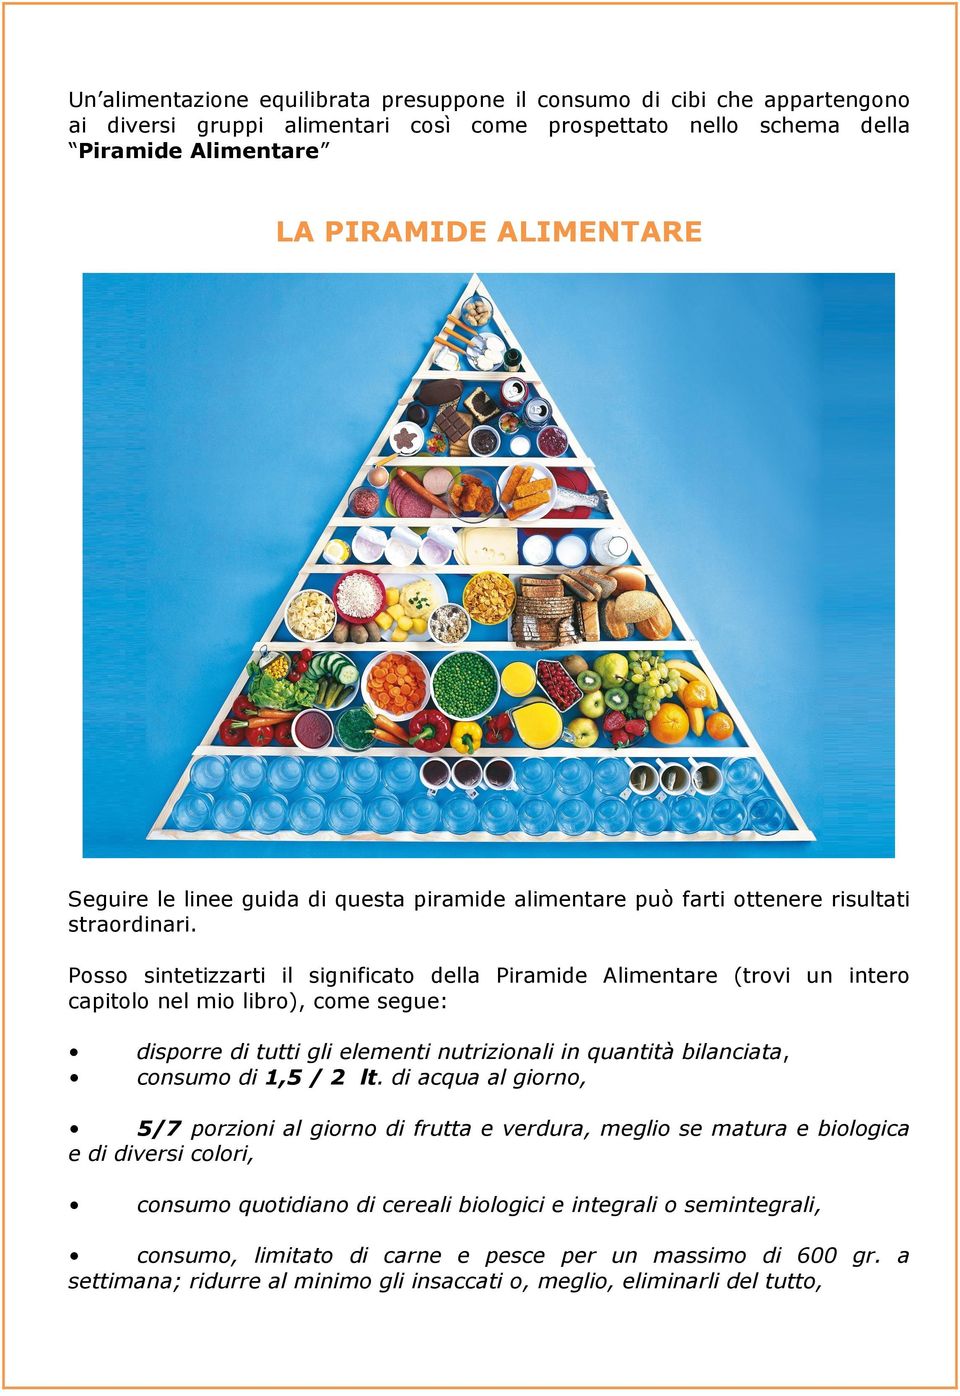 Posso sintetizzarti il significato della Piramide Alimentare (trovi un intero capitolo nel mio libro), come segue: disporre di tutti gli elementi nutrizionali in quantità bilanciata, consumo di 1,5 /